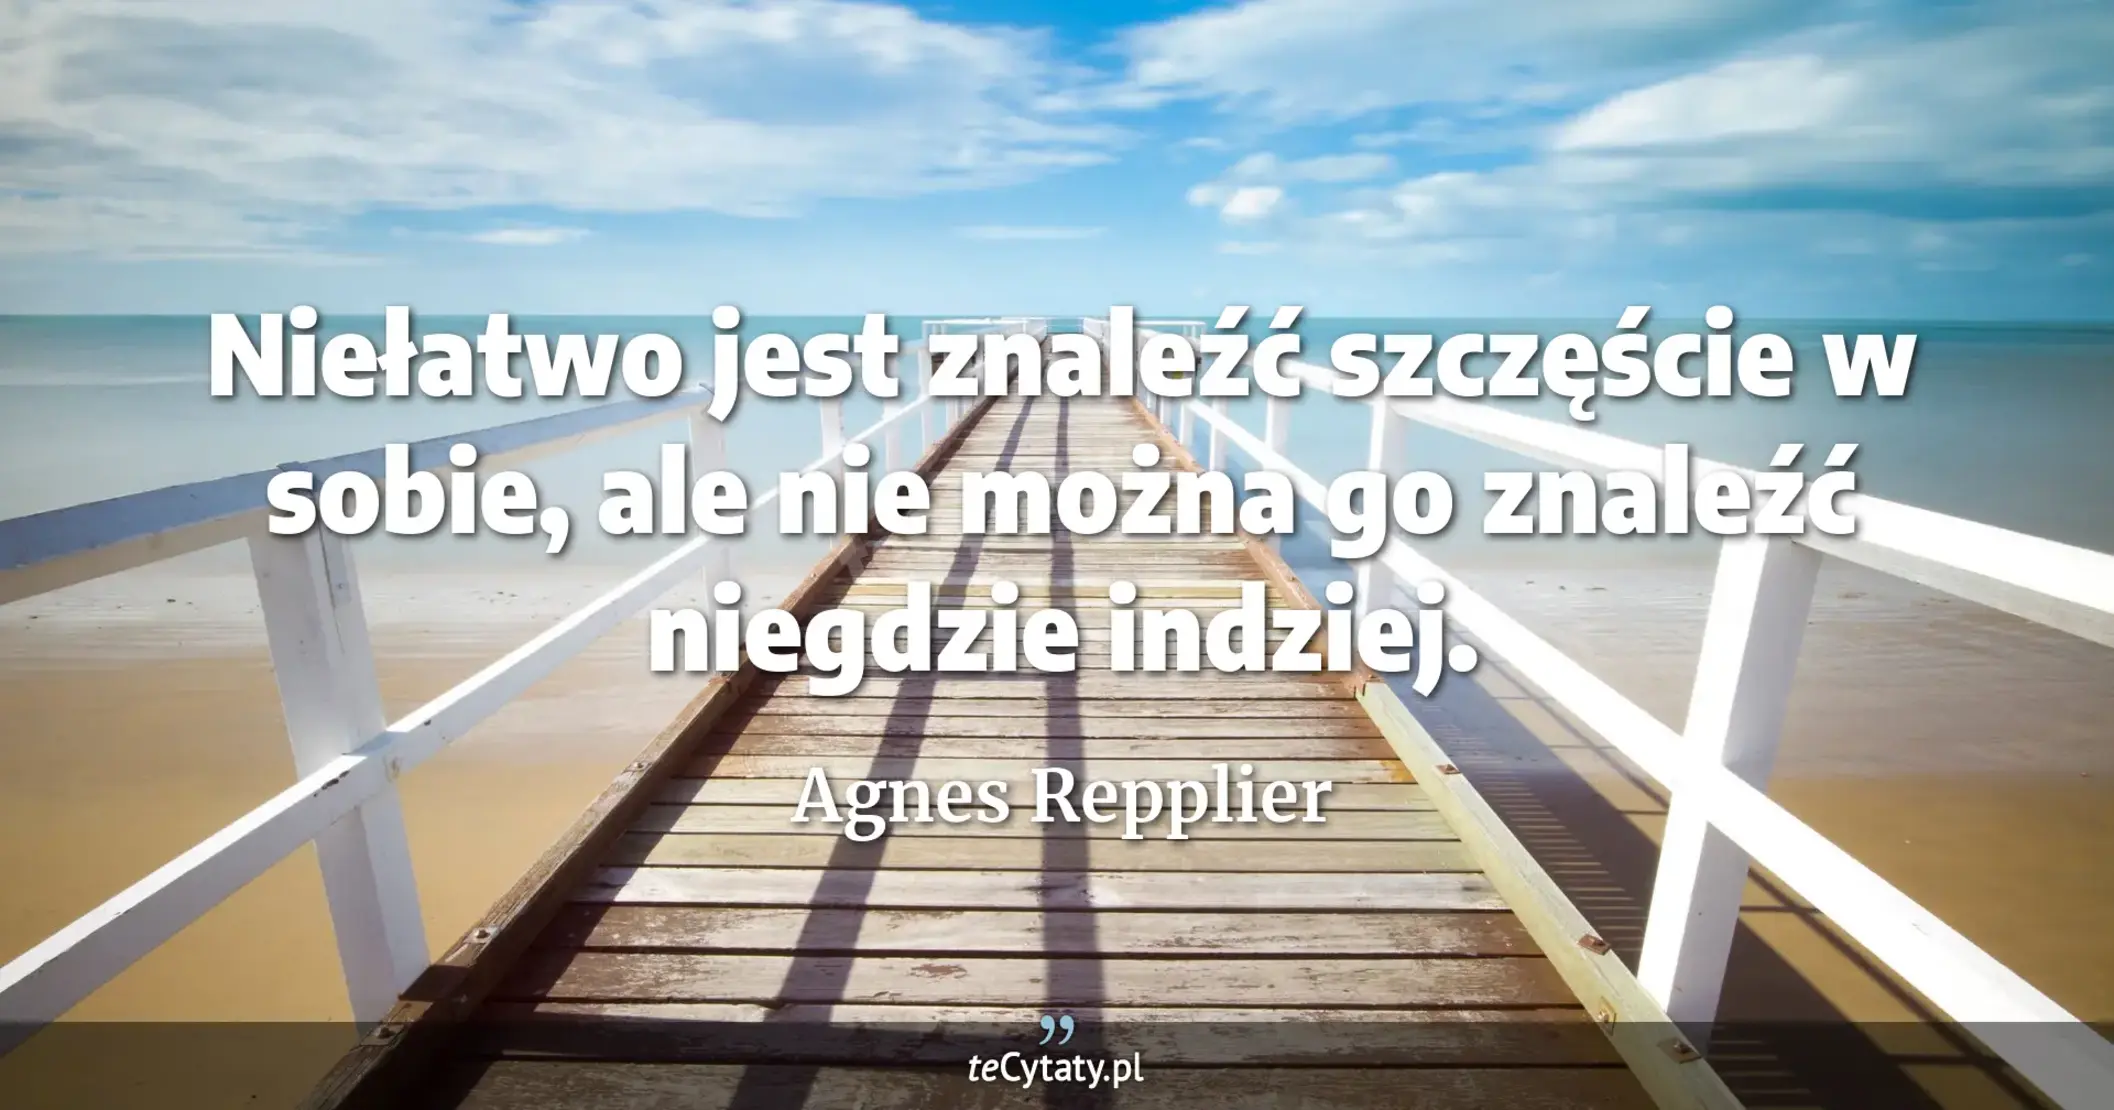 Niełatwo jest znaleźć szczęście w sobie, ale nie można go znaleźć niegdzie indziej. - Agnes Repplier